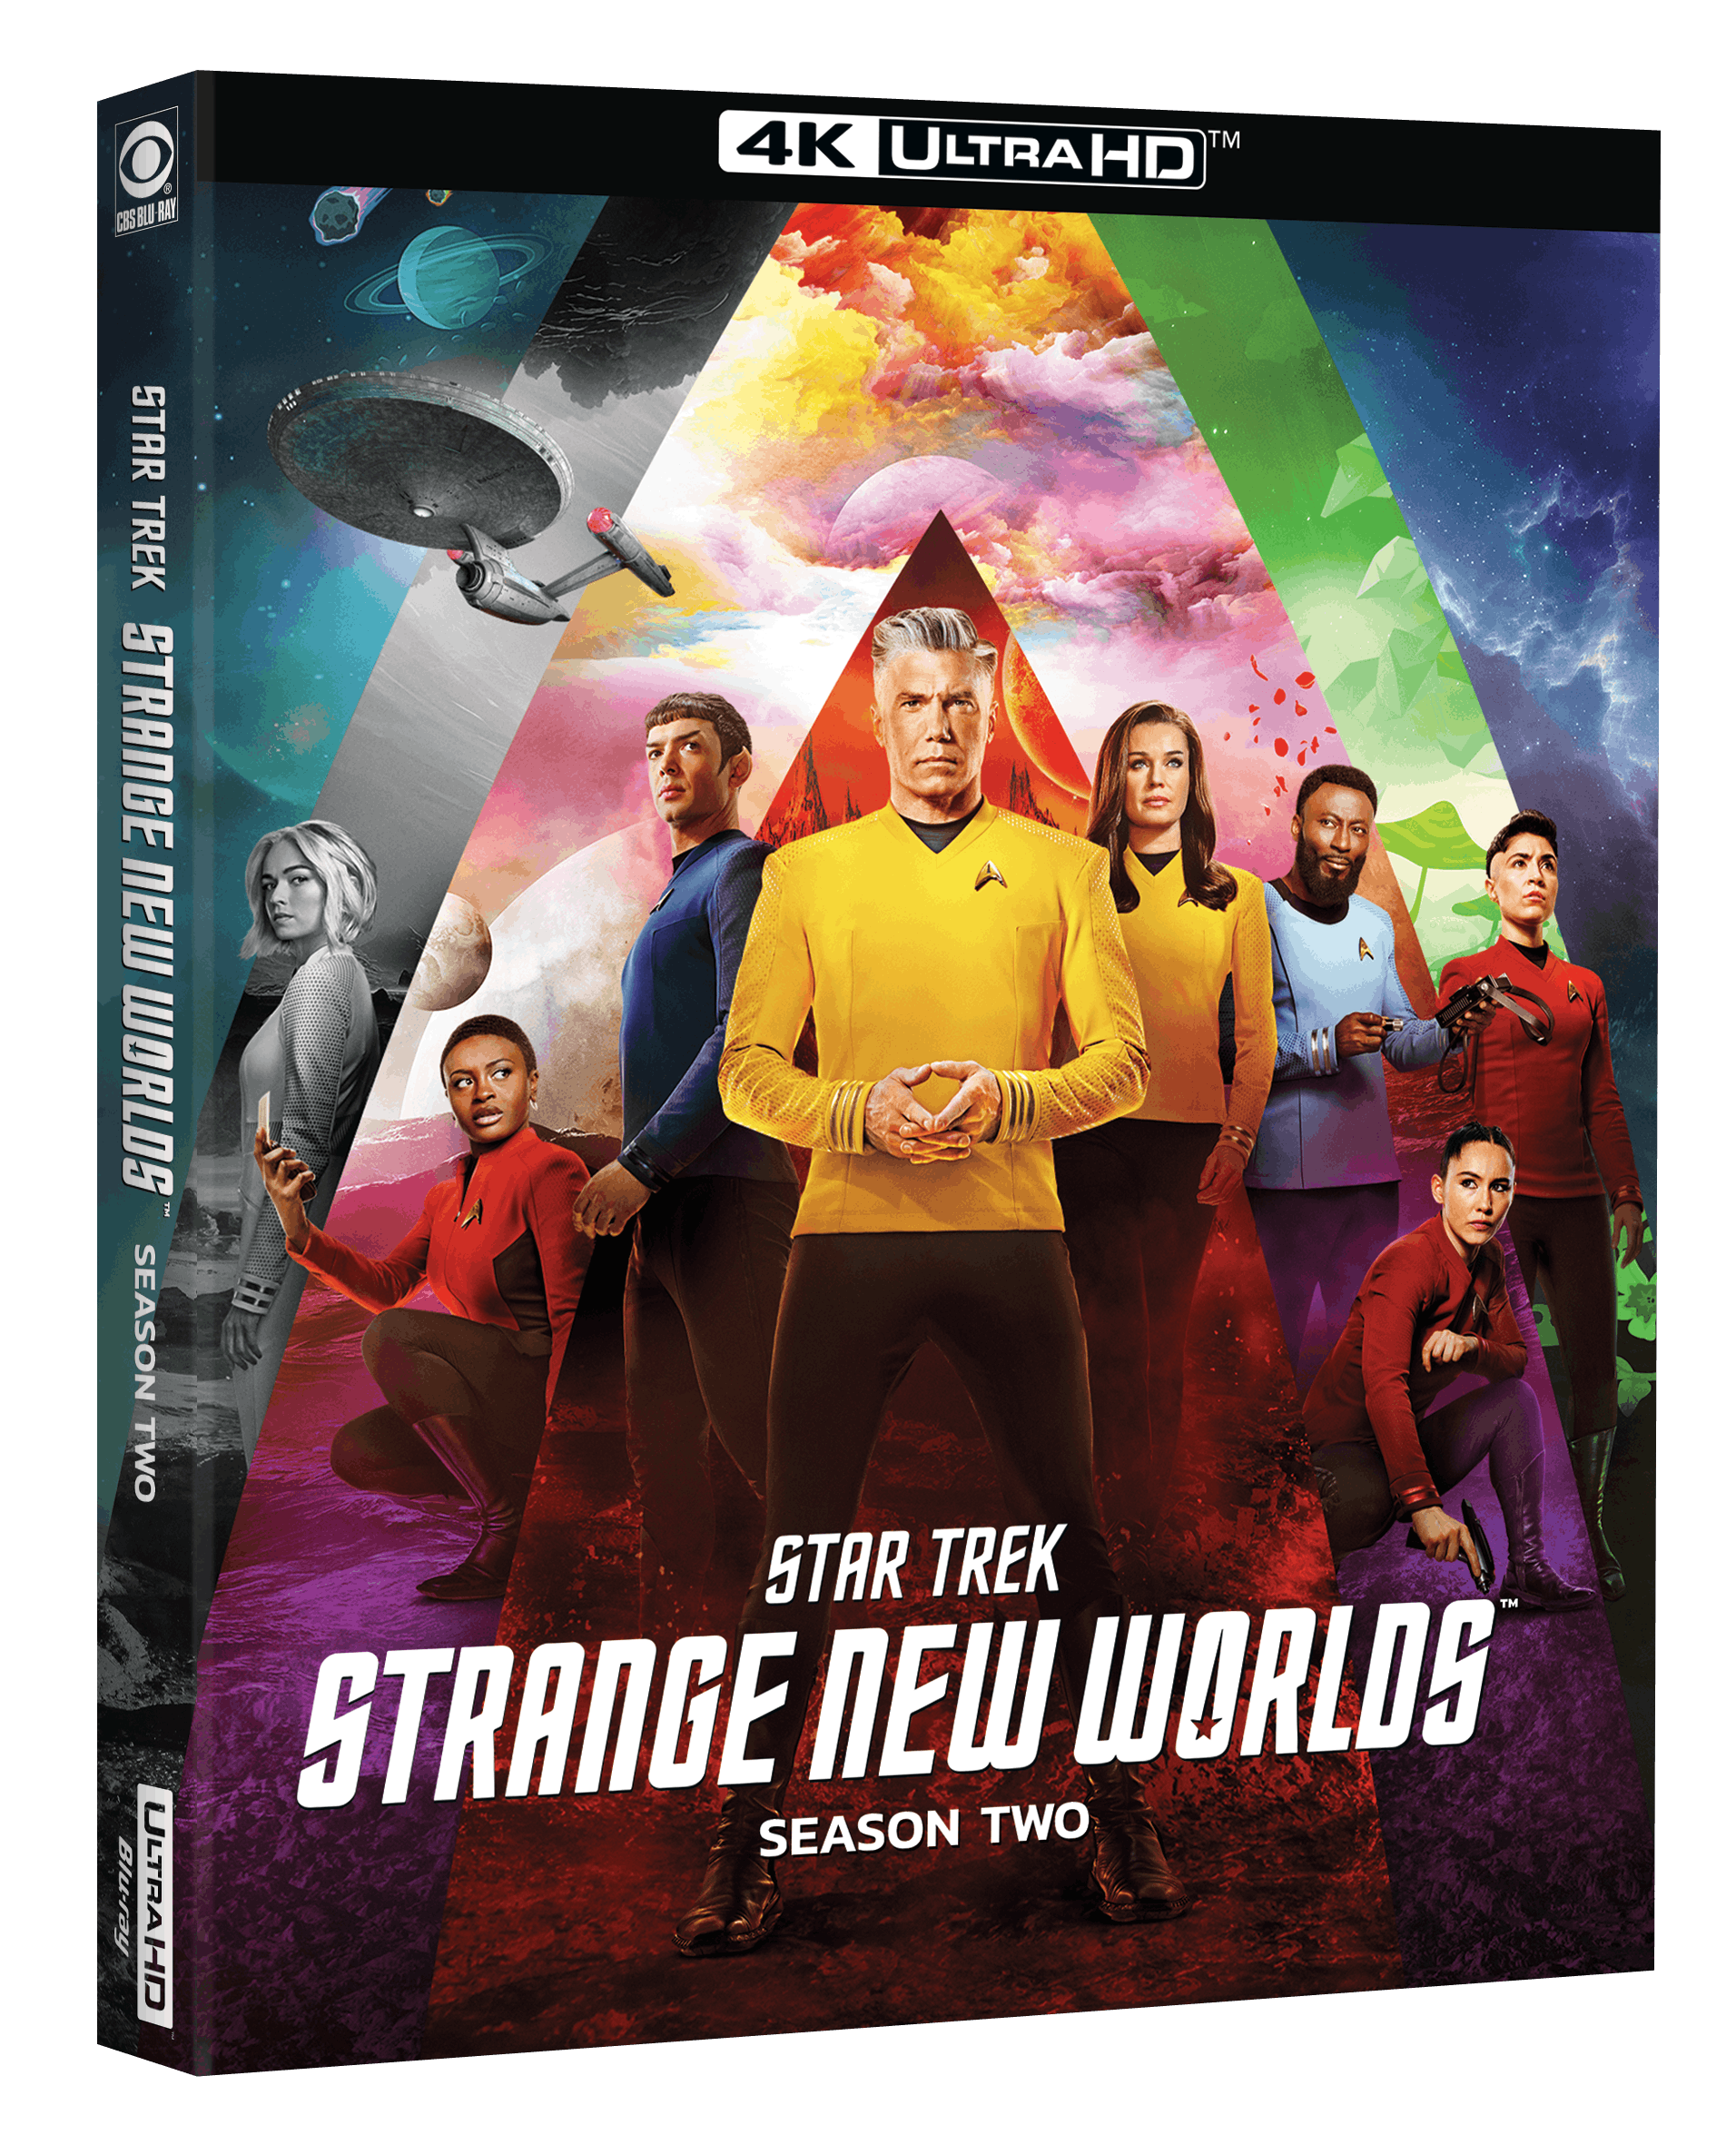 Star Trek: Strange New Worlds Season 2 Arrives on DVD, Blu-ray